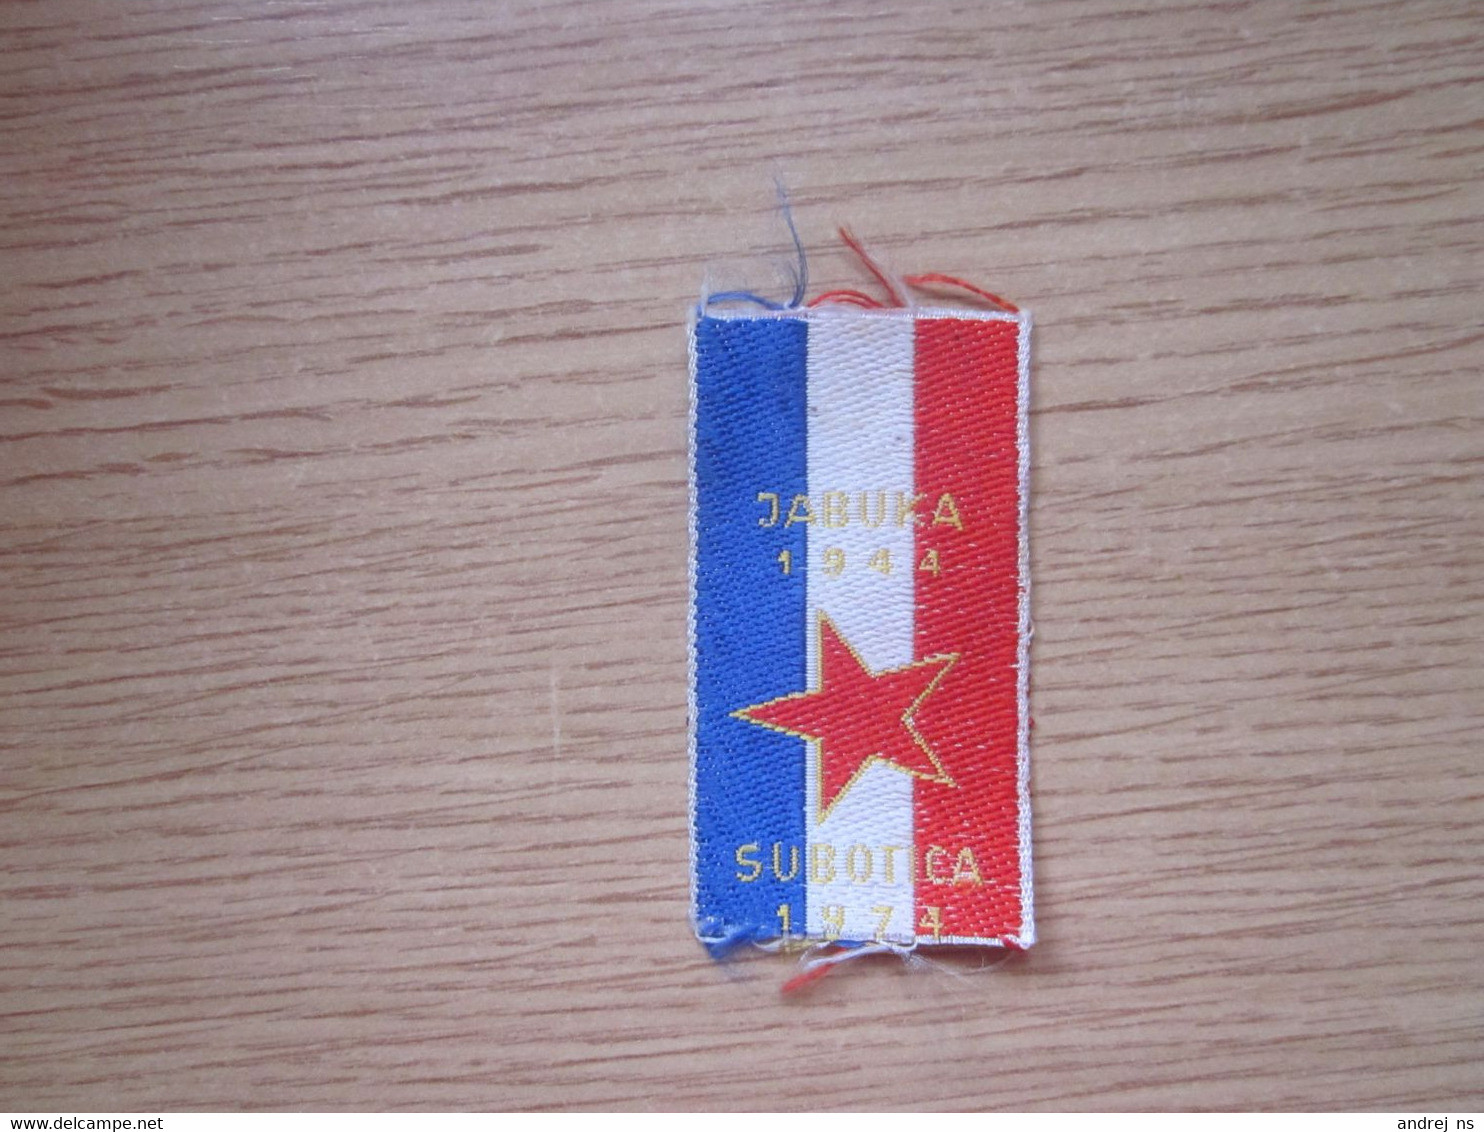 Small Flag Of Yugoslavia Jabuka 1944 Subotica 1974 3.2x5.5 Cm - Banderas